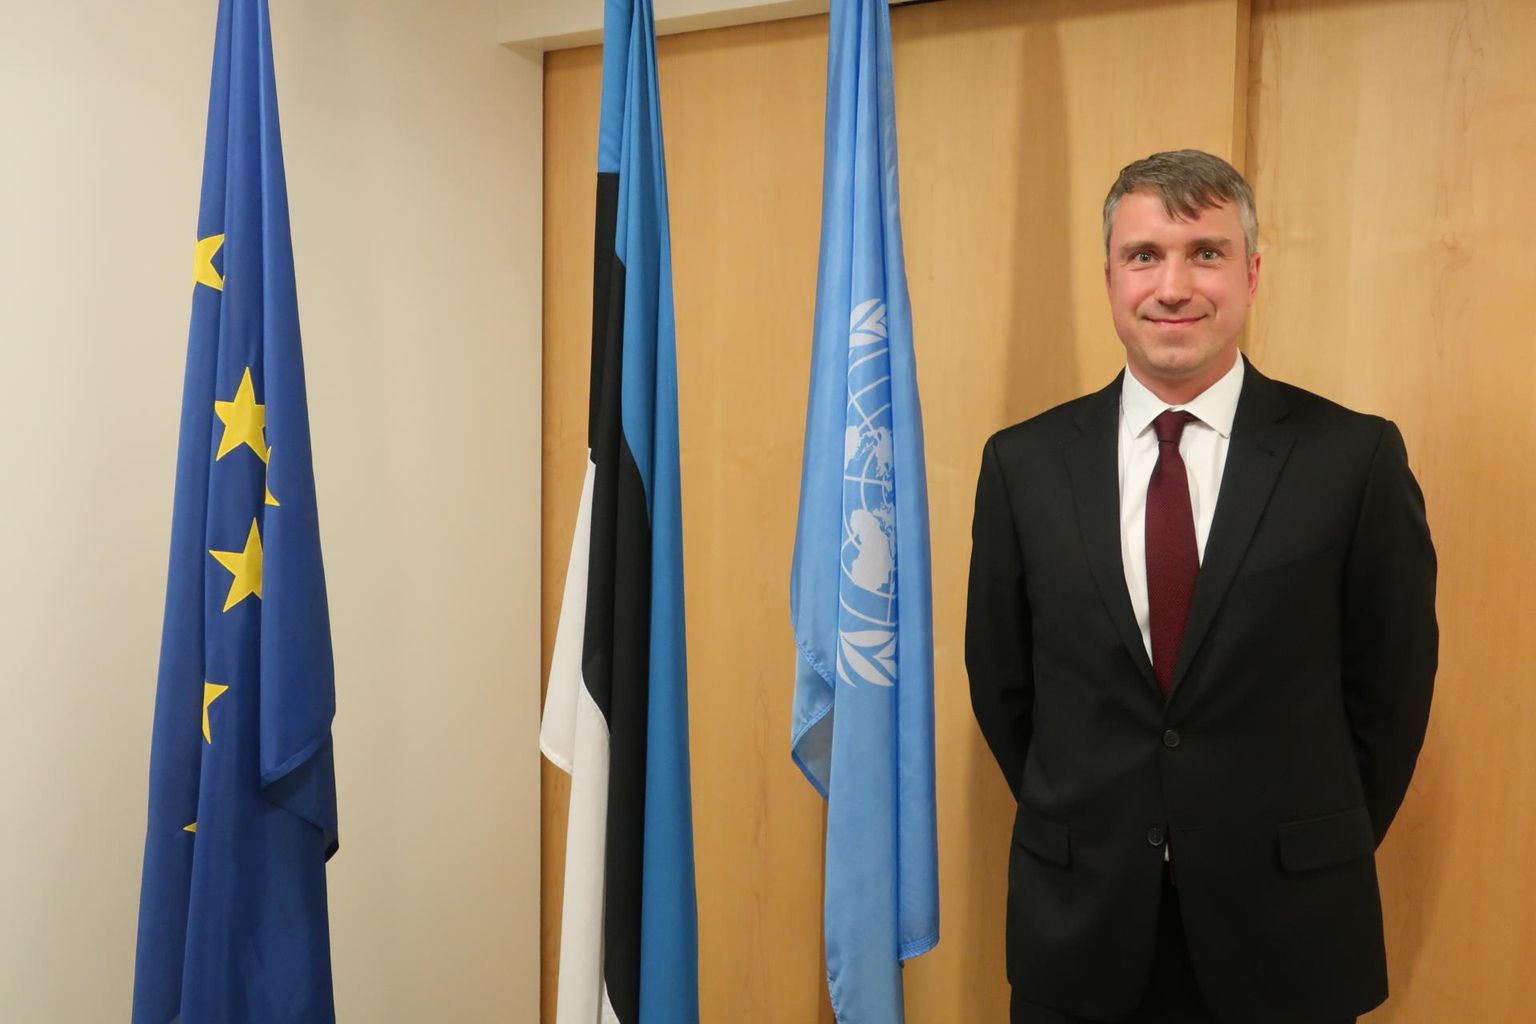 Eesti ÜRO esinduse asejuht Gert Auväärt New Yorgis Eesti esinduses.